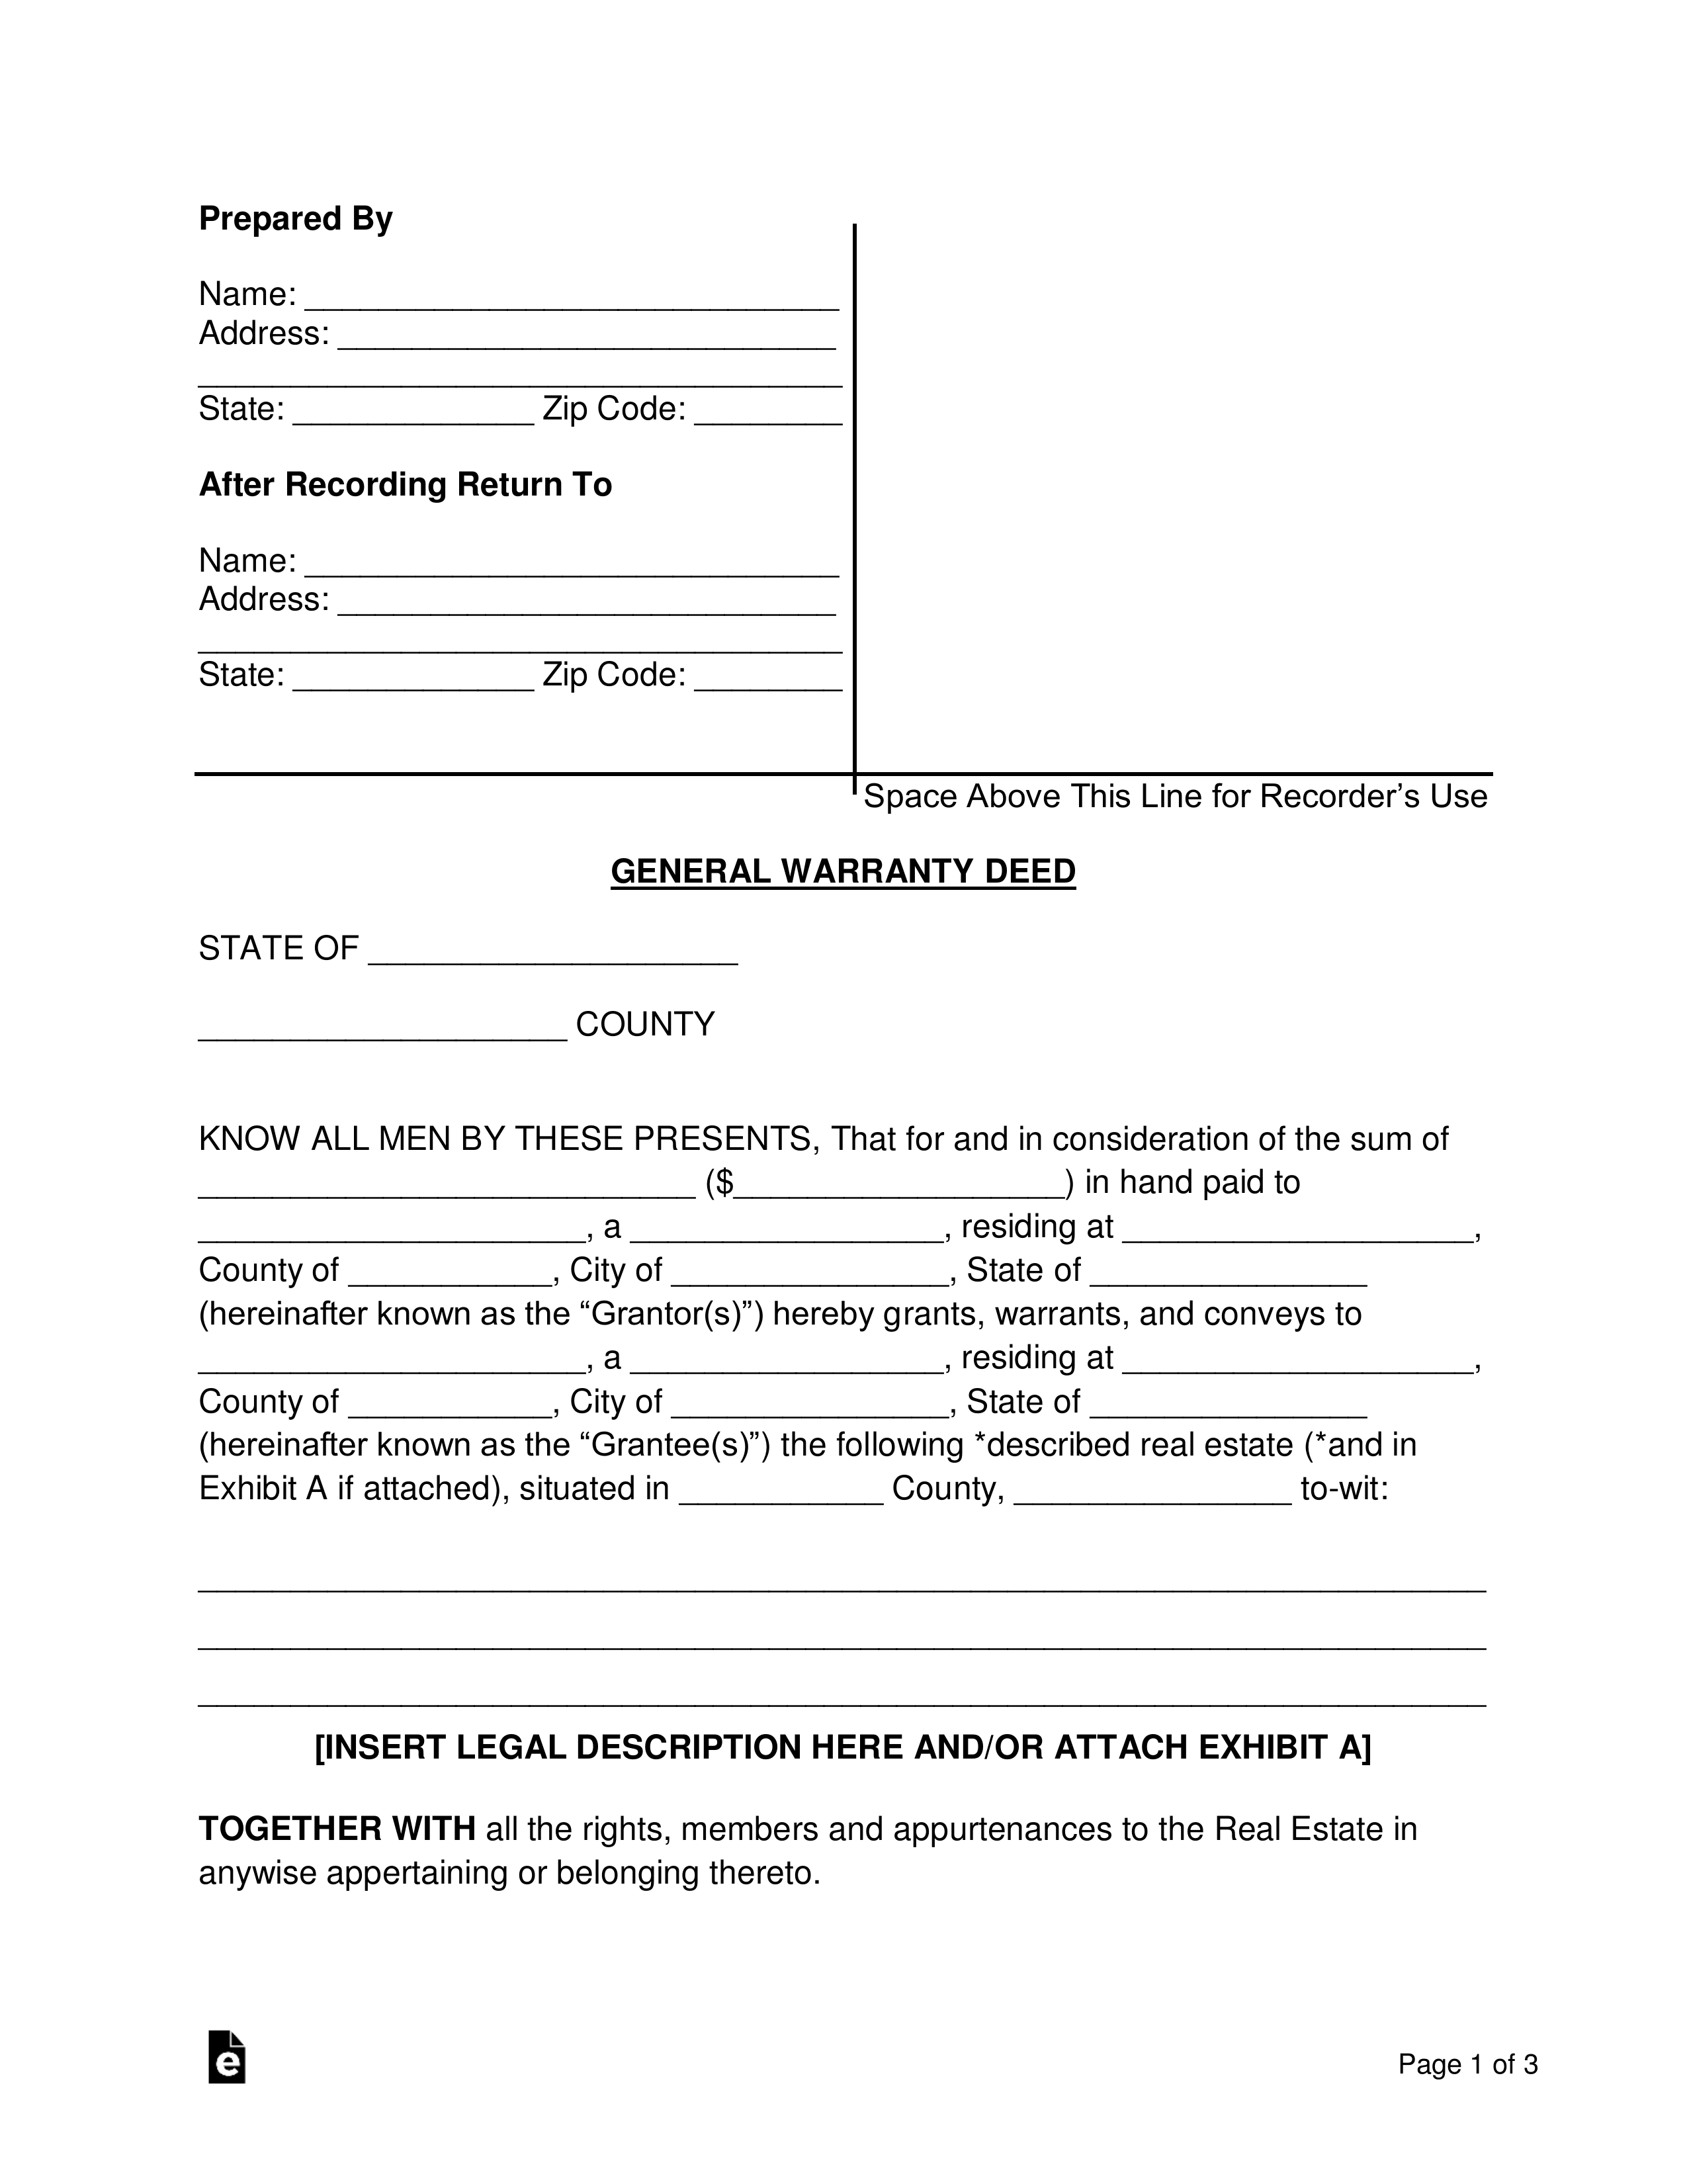 General Warranty Deed Form